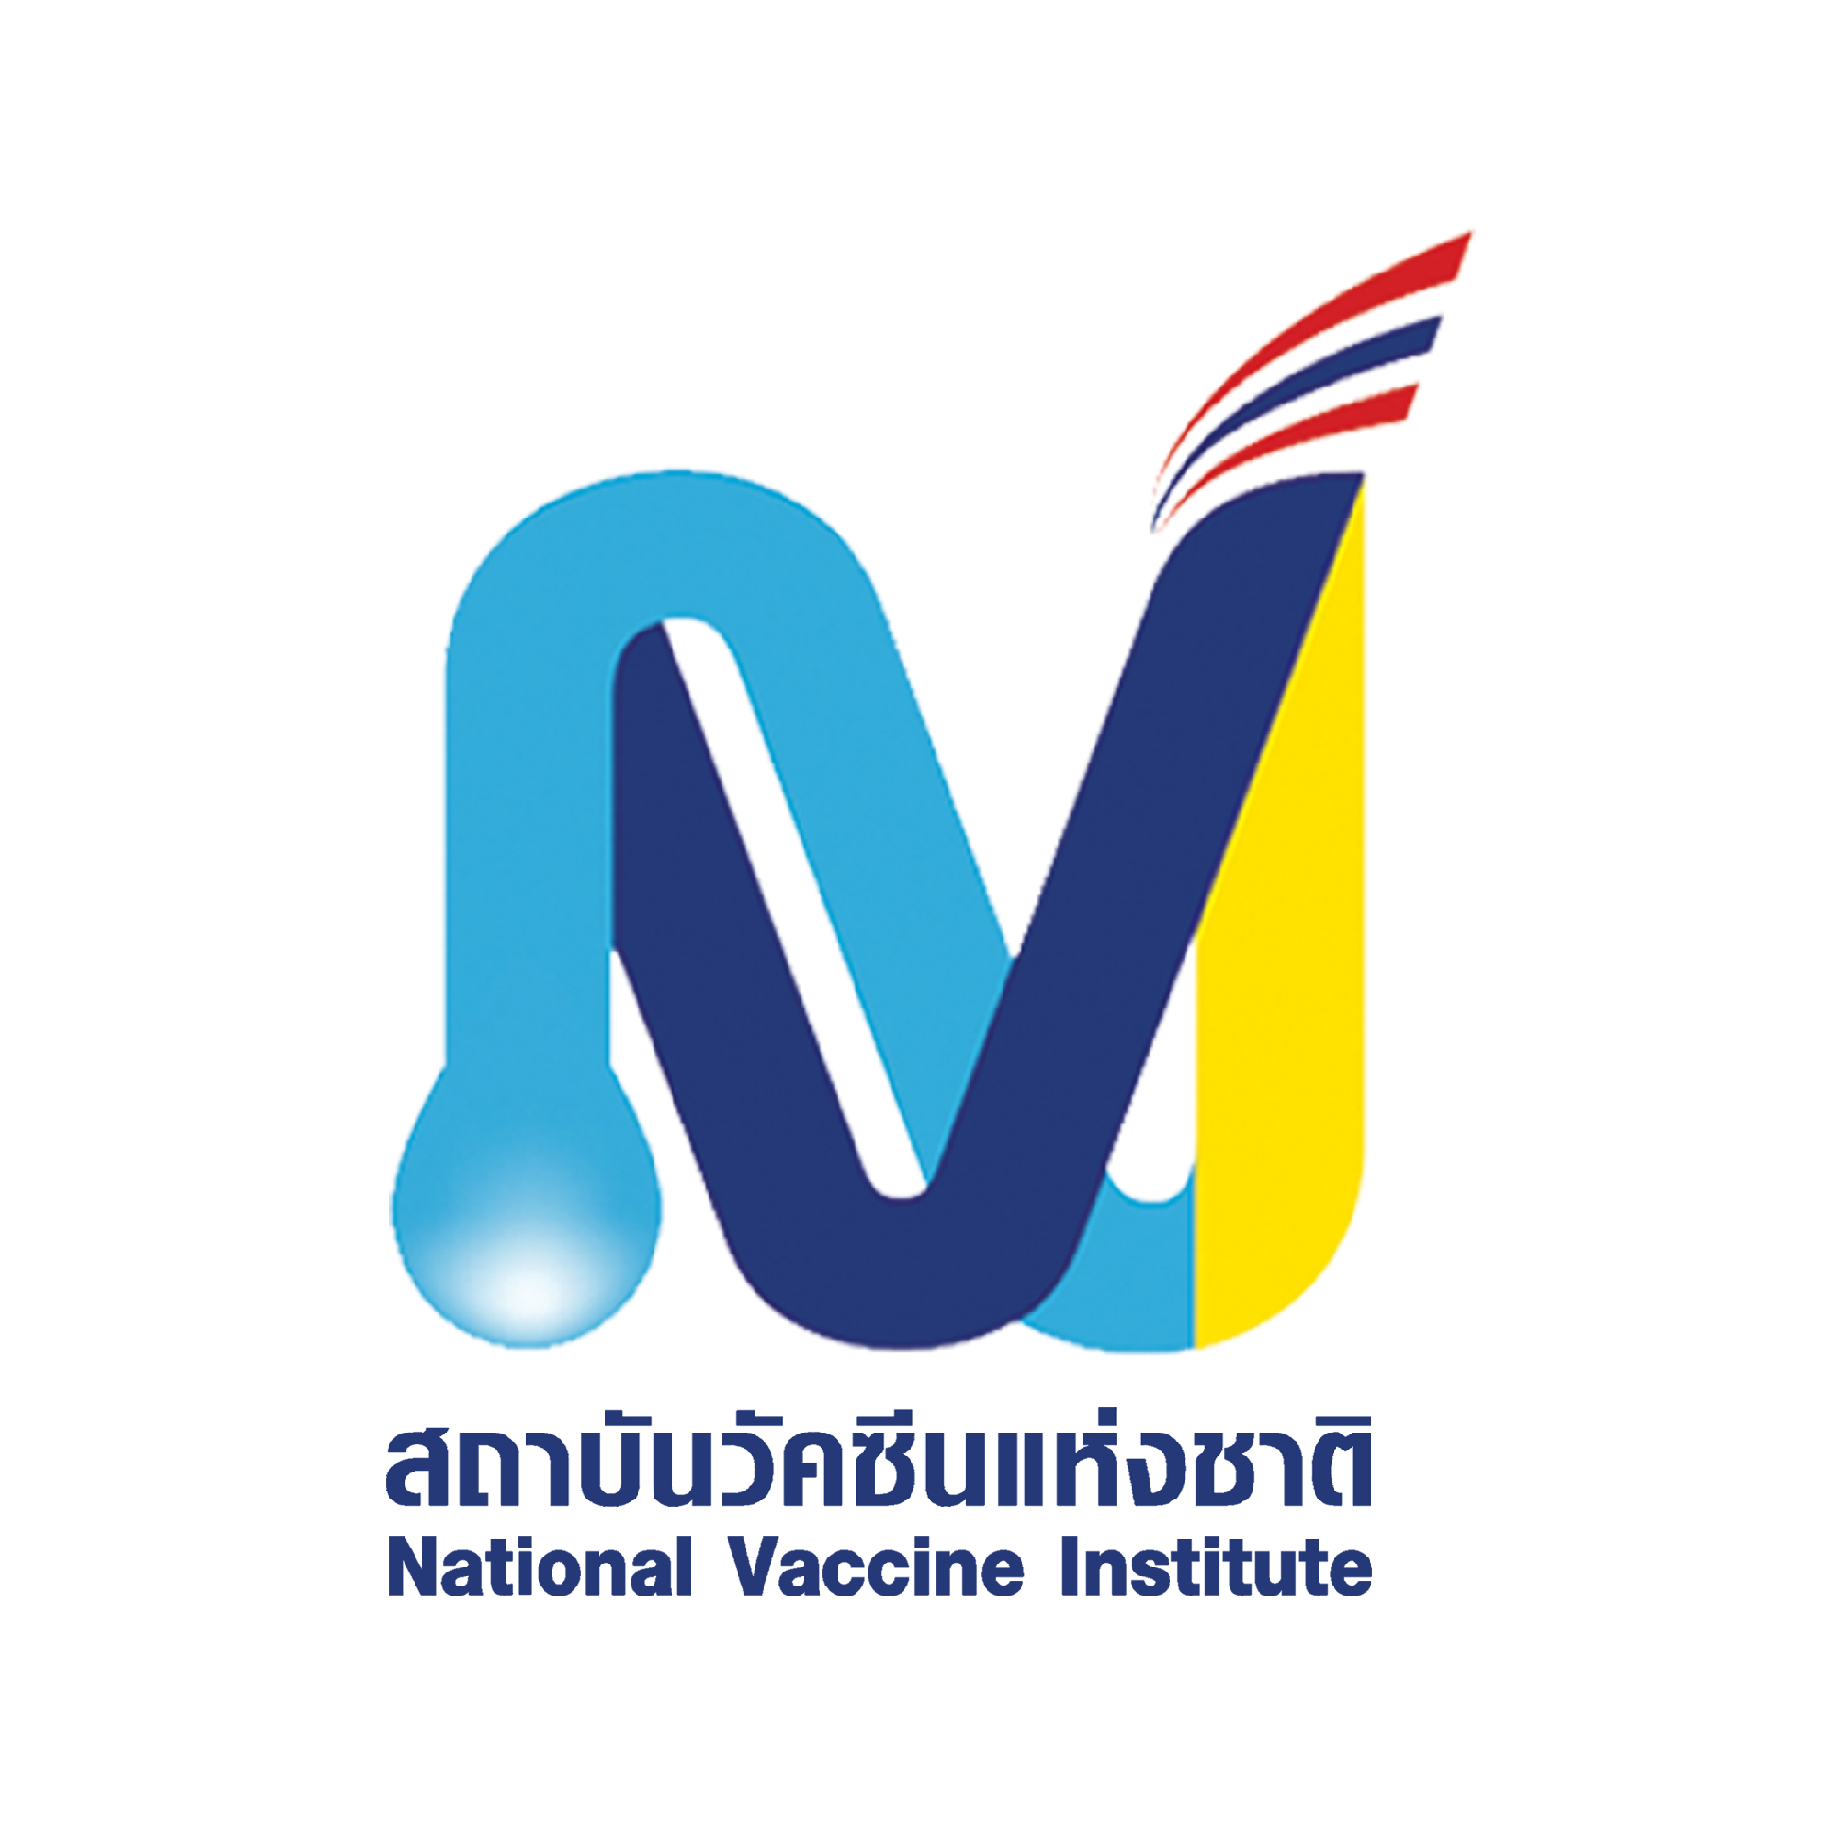 (ขยายเวลา) สถาบันวิจัยวัคซีนแห่งชาติ ประกาศรับข้อเสนอโครงการวิจัย ประจำปีงบประมาณ 2567